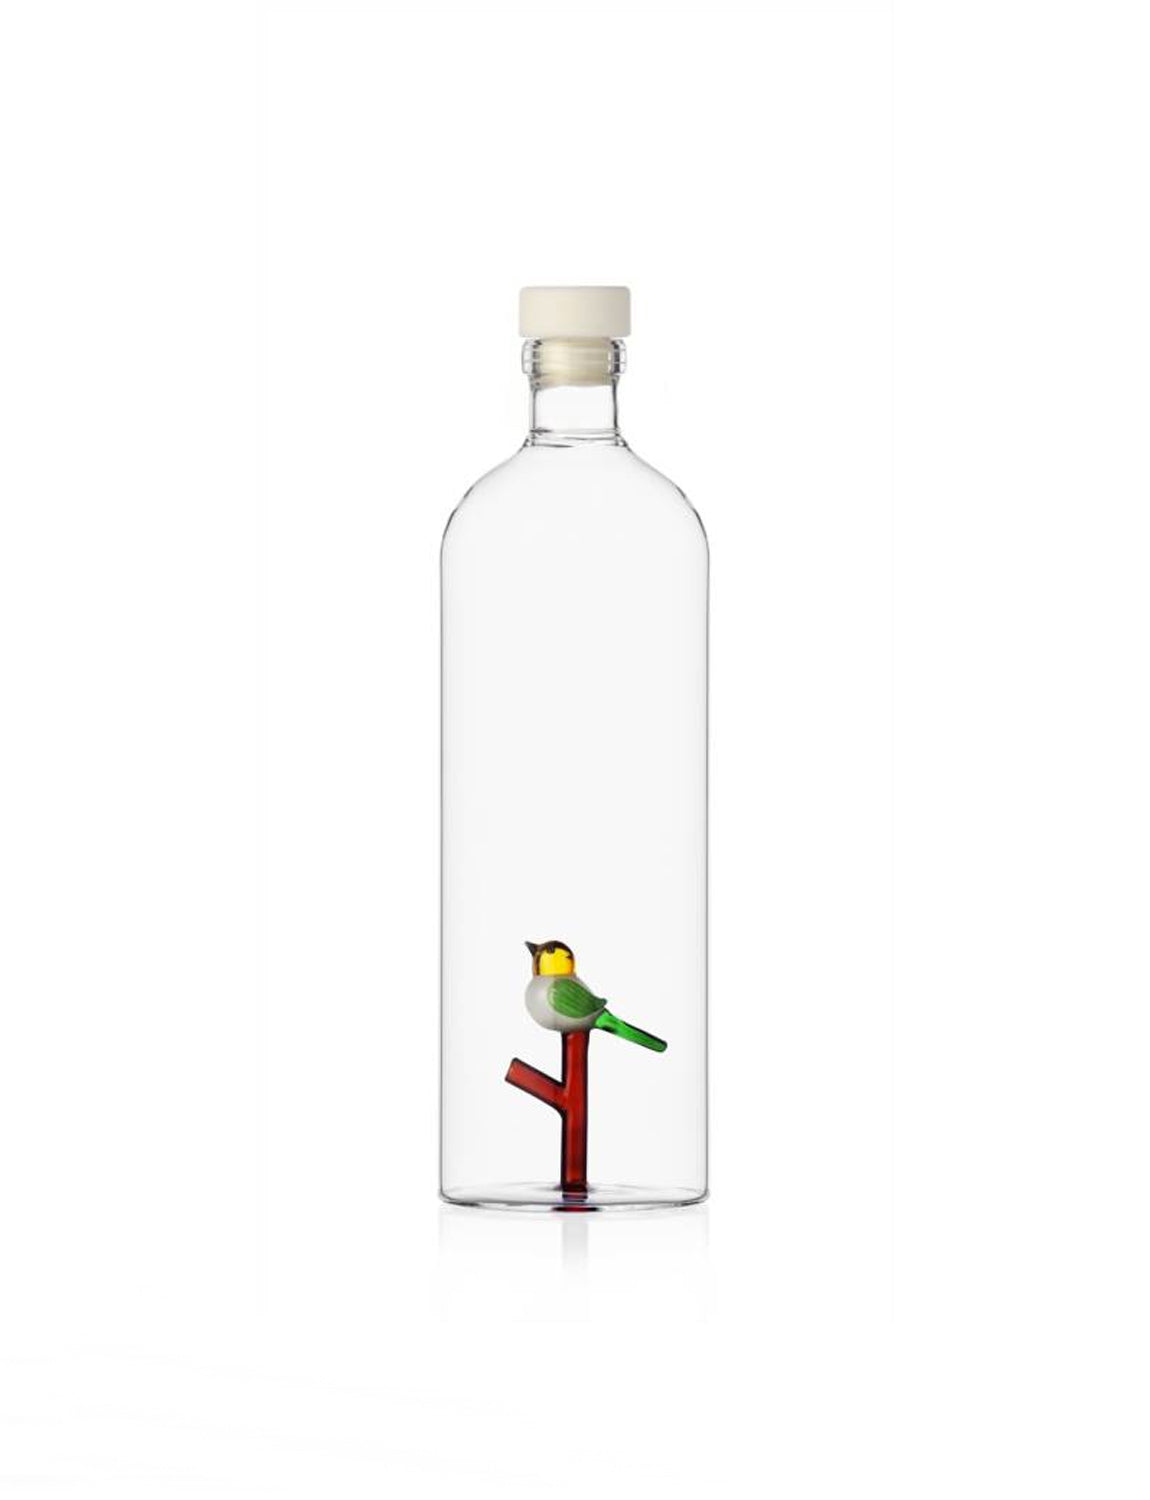 Ichendorf Animal Farm Bottle, bird